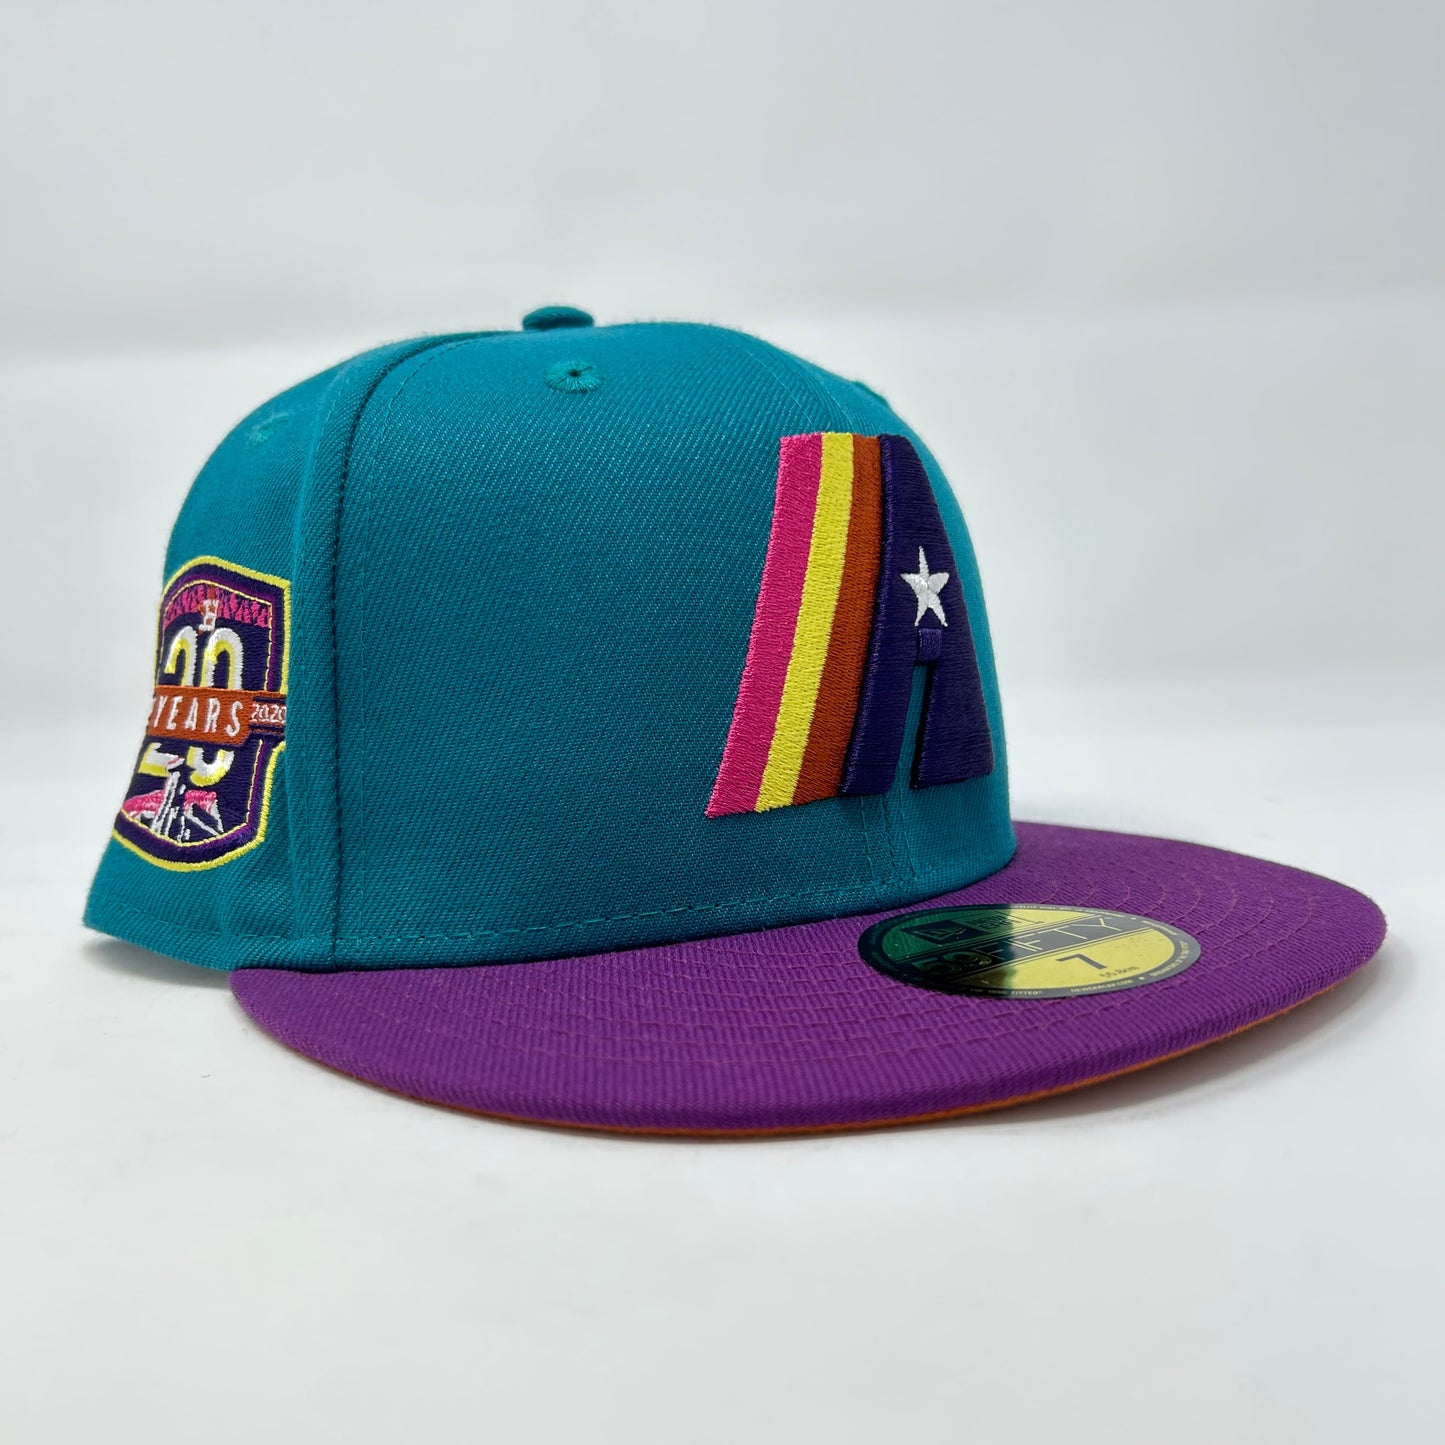 Houston Astros “Teal Prototype” Hat